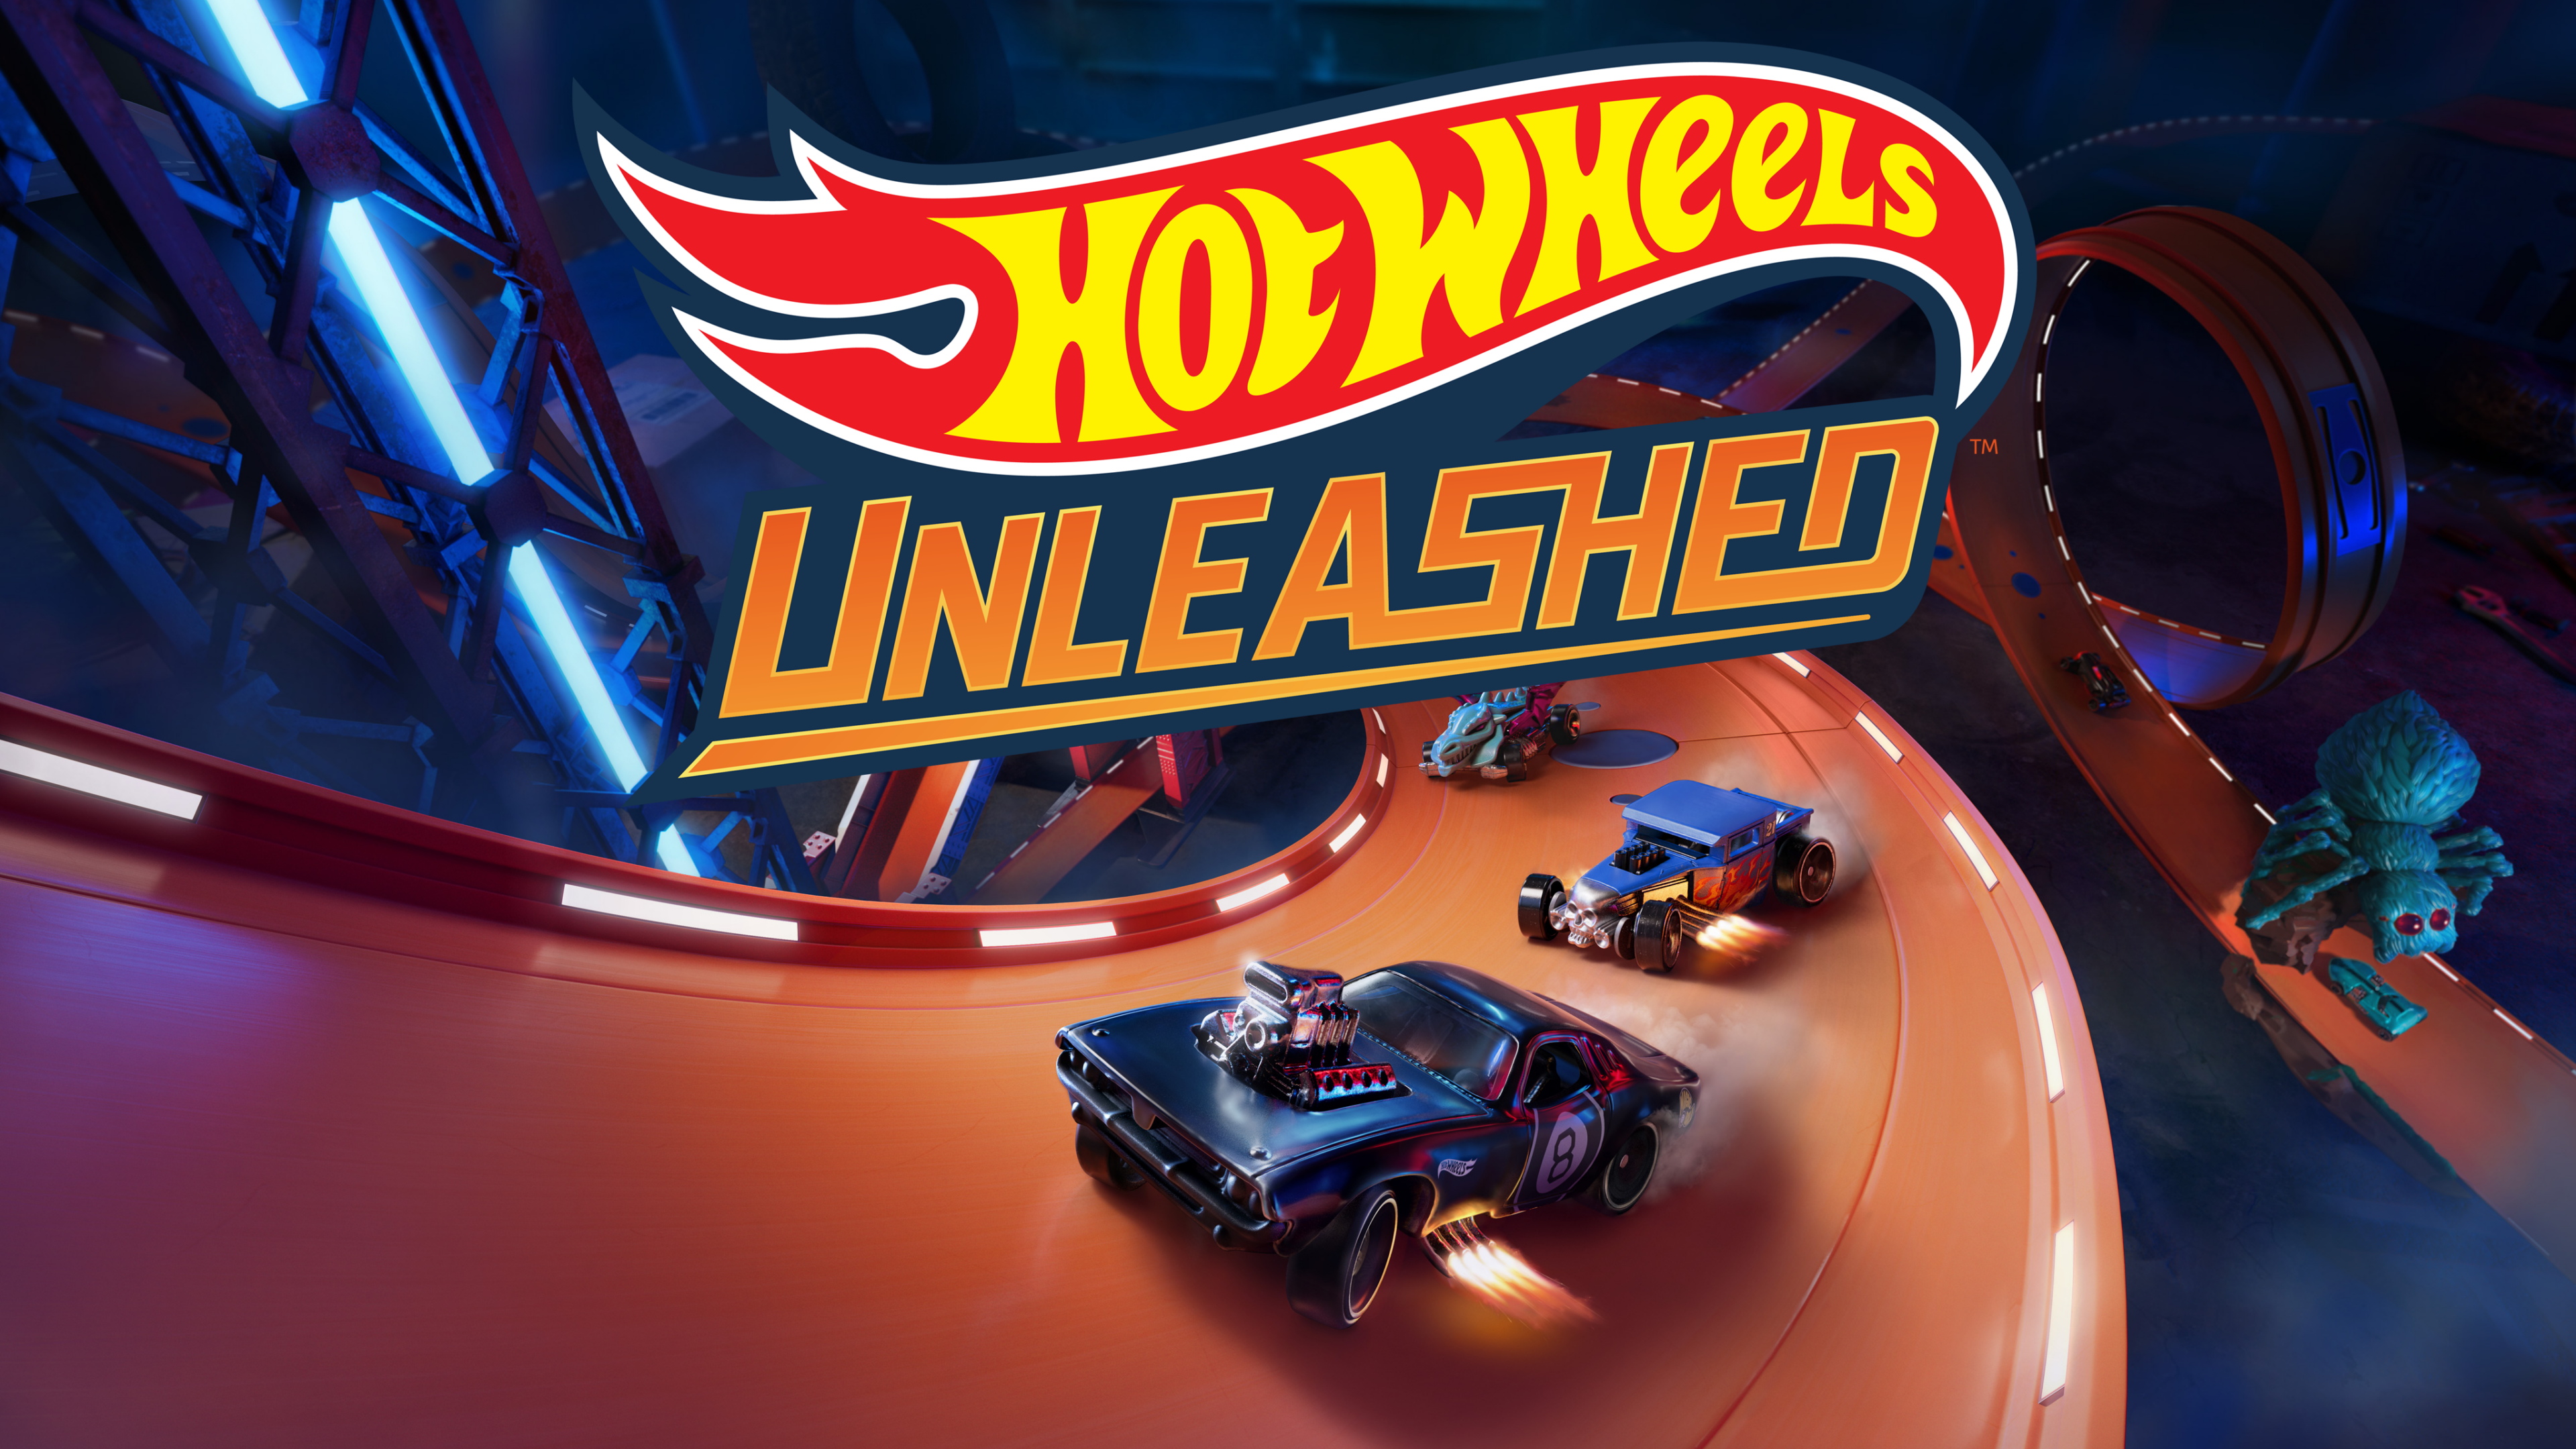 Les ventes de Hot Wheels Unleashed dépassent les 2 millions d'exemplaires